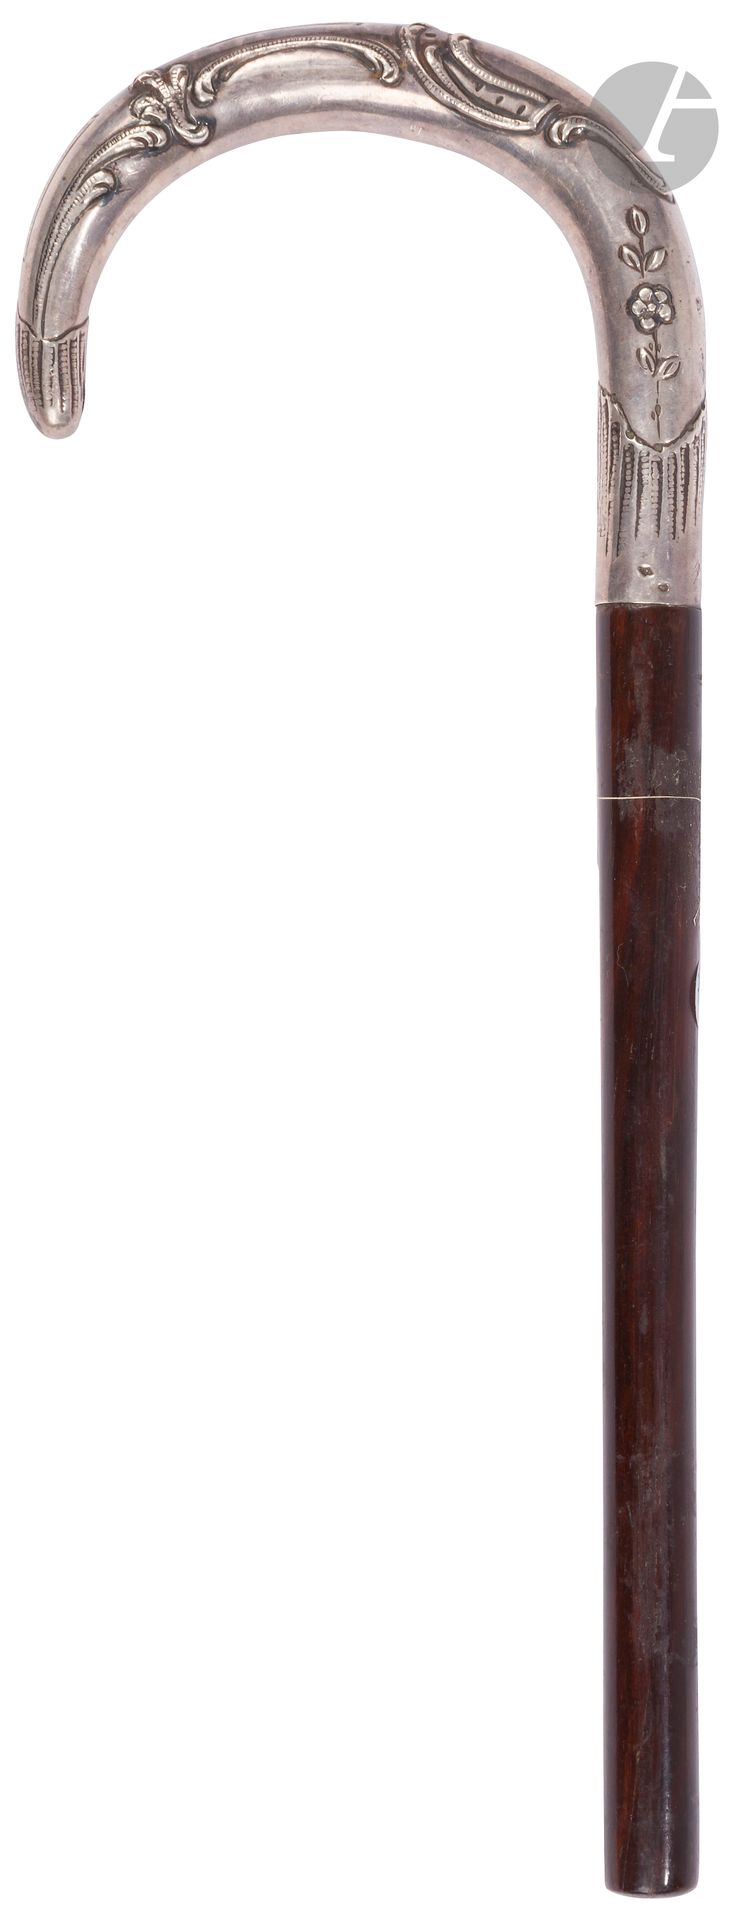 Null Stock mit Milord-Griff aus getriebenem Silber.
Länge: 22 cm (abgeschnittene&hellip;